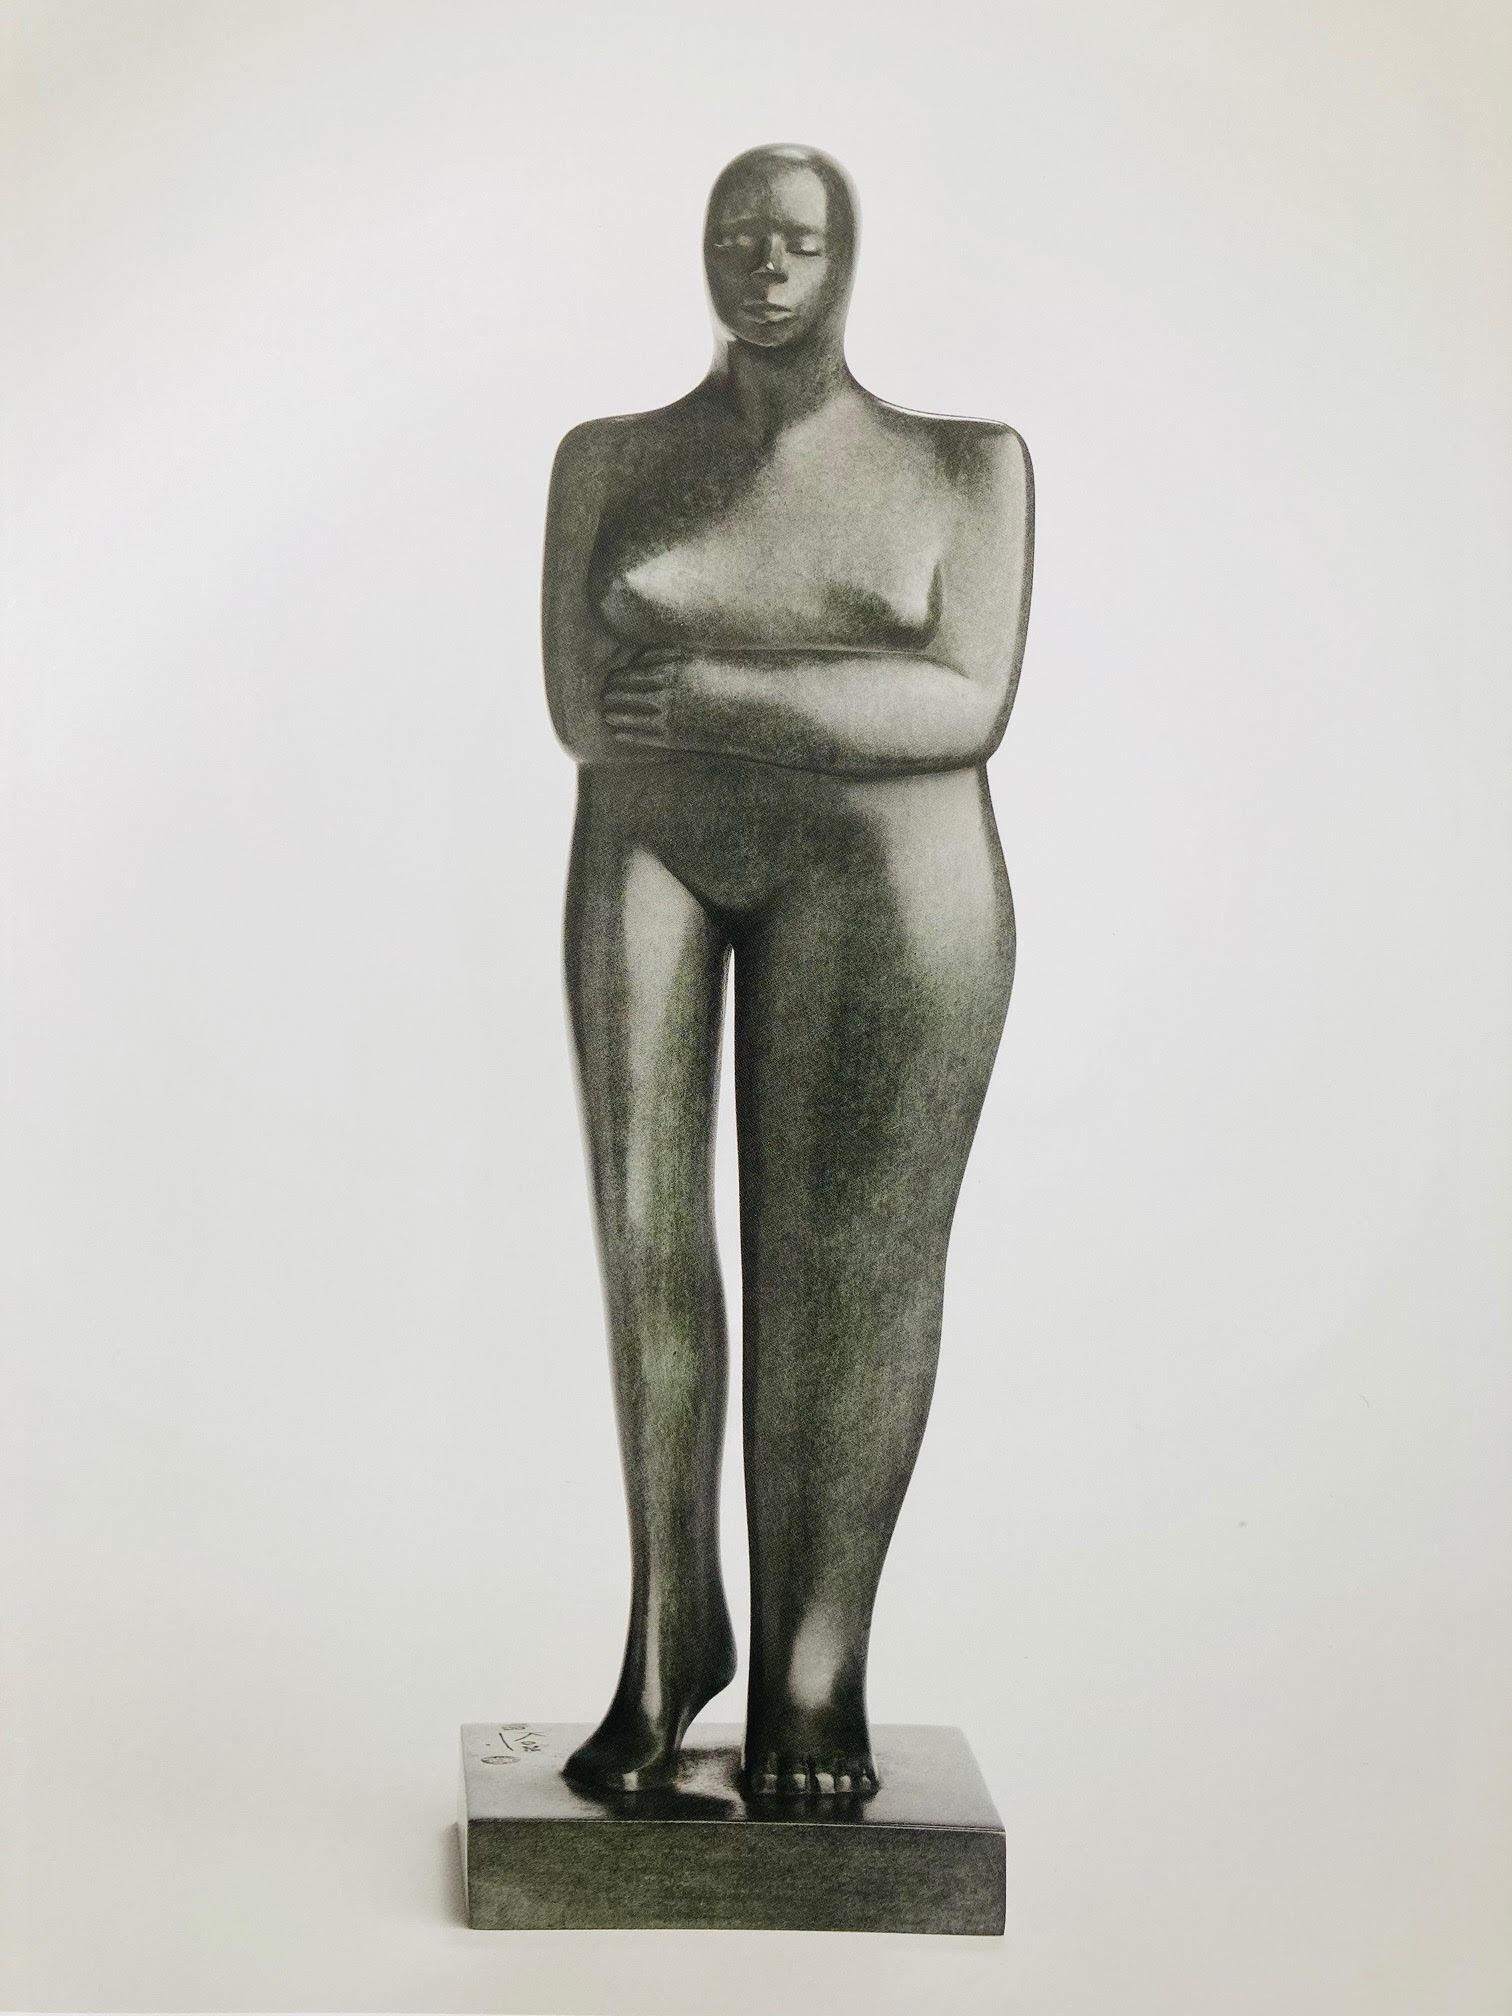 KOBE Figurative Sculpture - Standing Figure Bronze Sculpture Female Nude Figure 